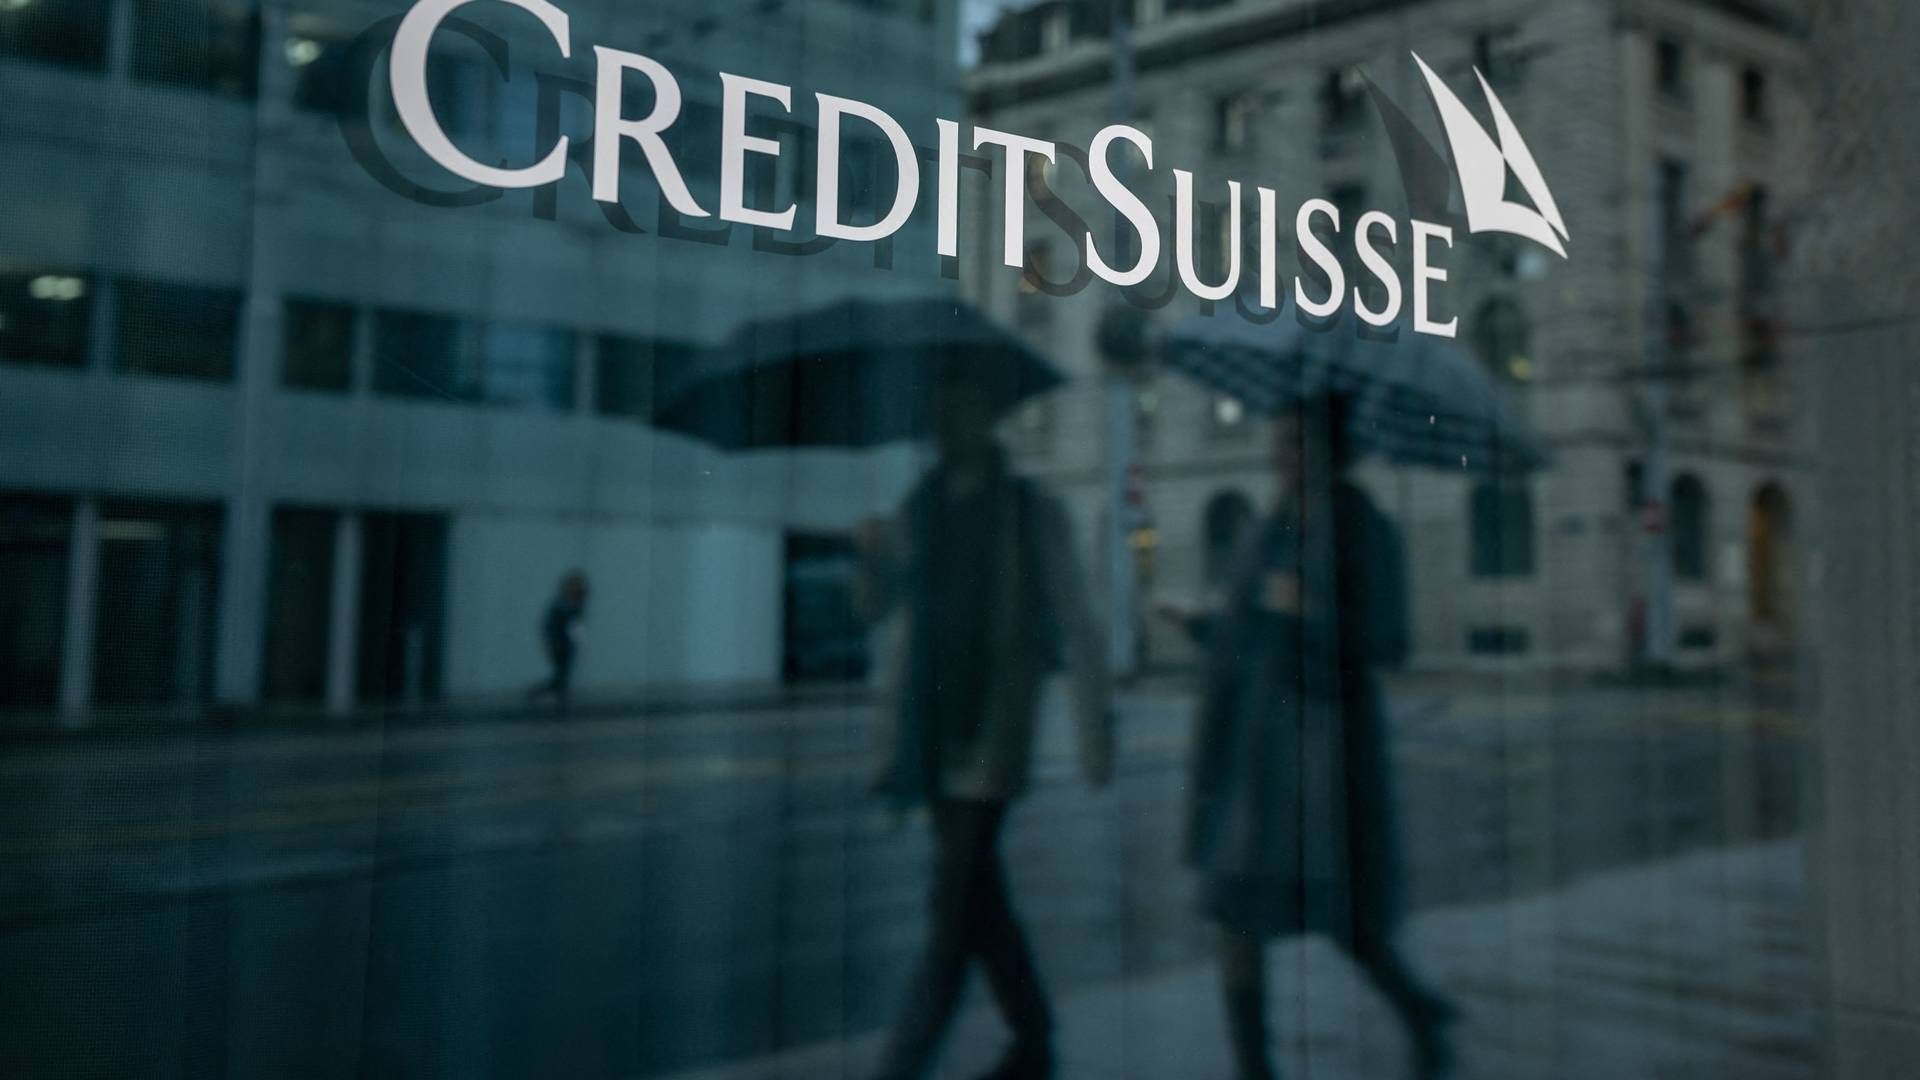 Credit Suisse blev overtaget af en anden schweizisk bank, UBS, efter lang tids krise. | Foto: Fabrice Coffrini